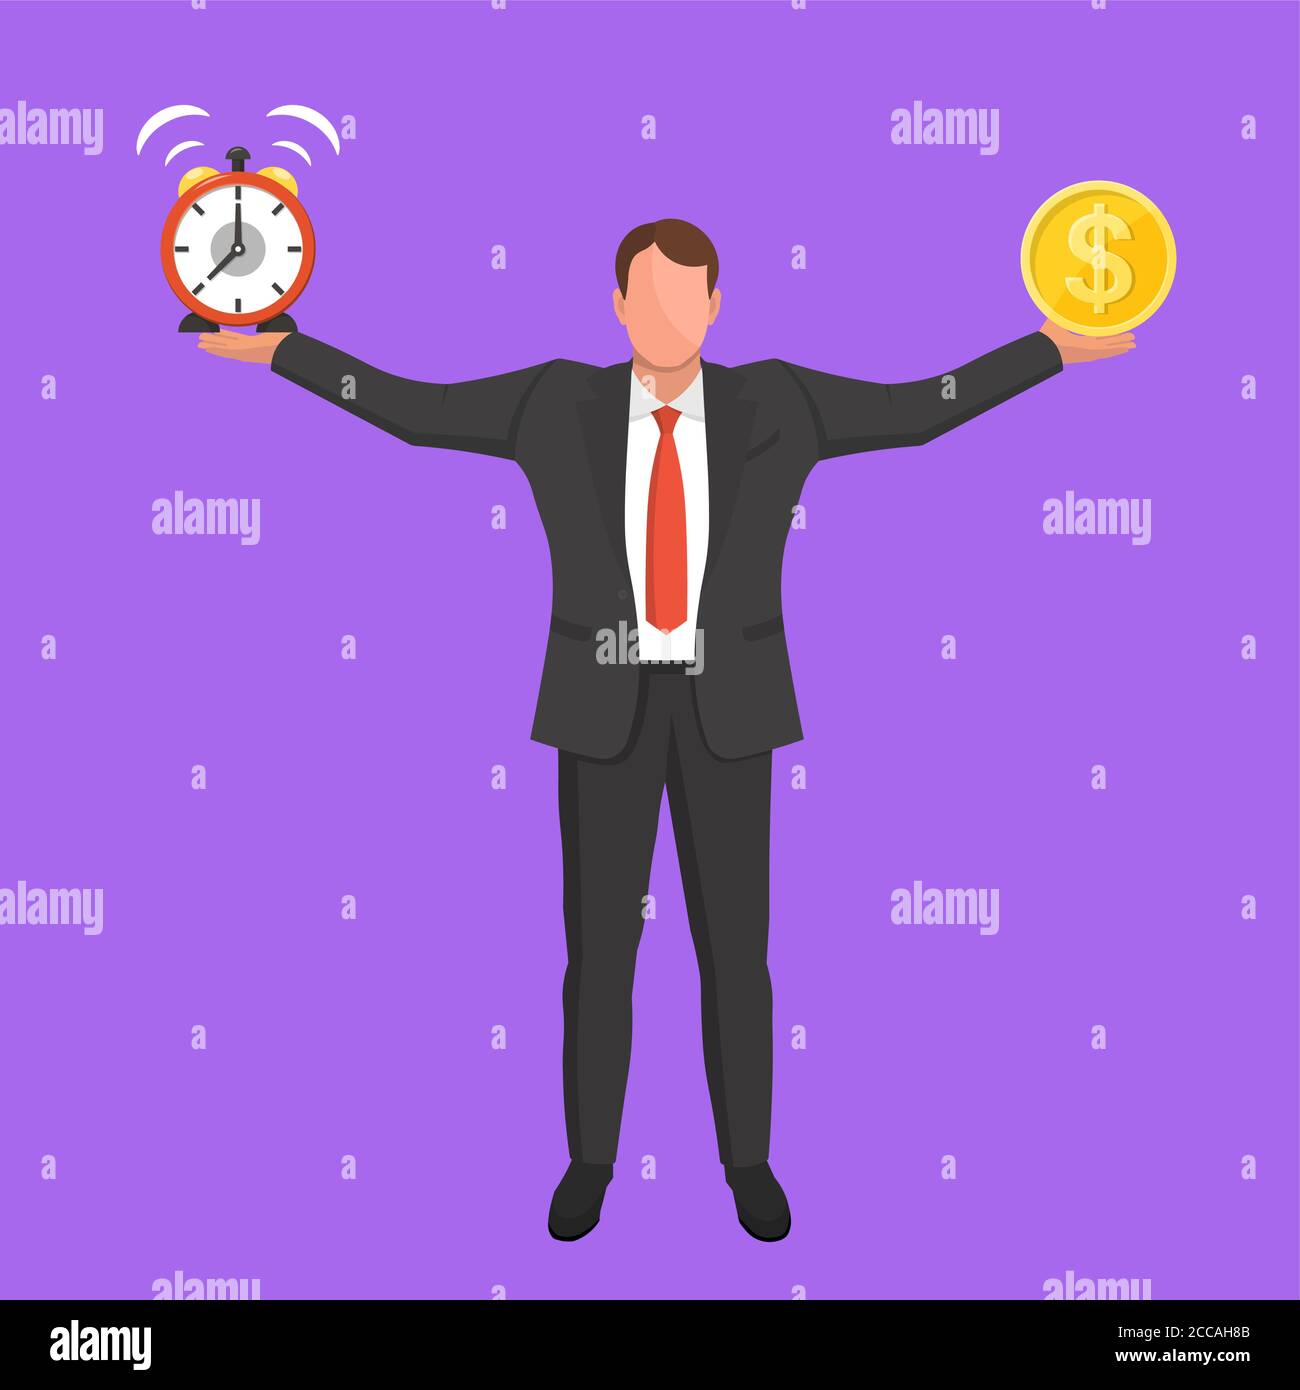 Ein Geschäftsmann hält einen Wecker und eine Geldmünze.Konzept Zeit und Geld.Balance zwischen Arbeit und der gegebenen Zeit.Geschäftskonzept.Vektor Illustratio Stock Vektor